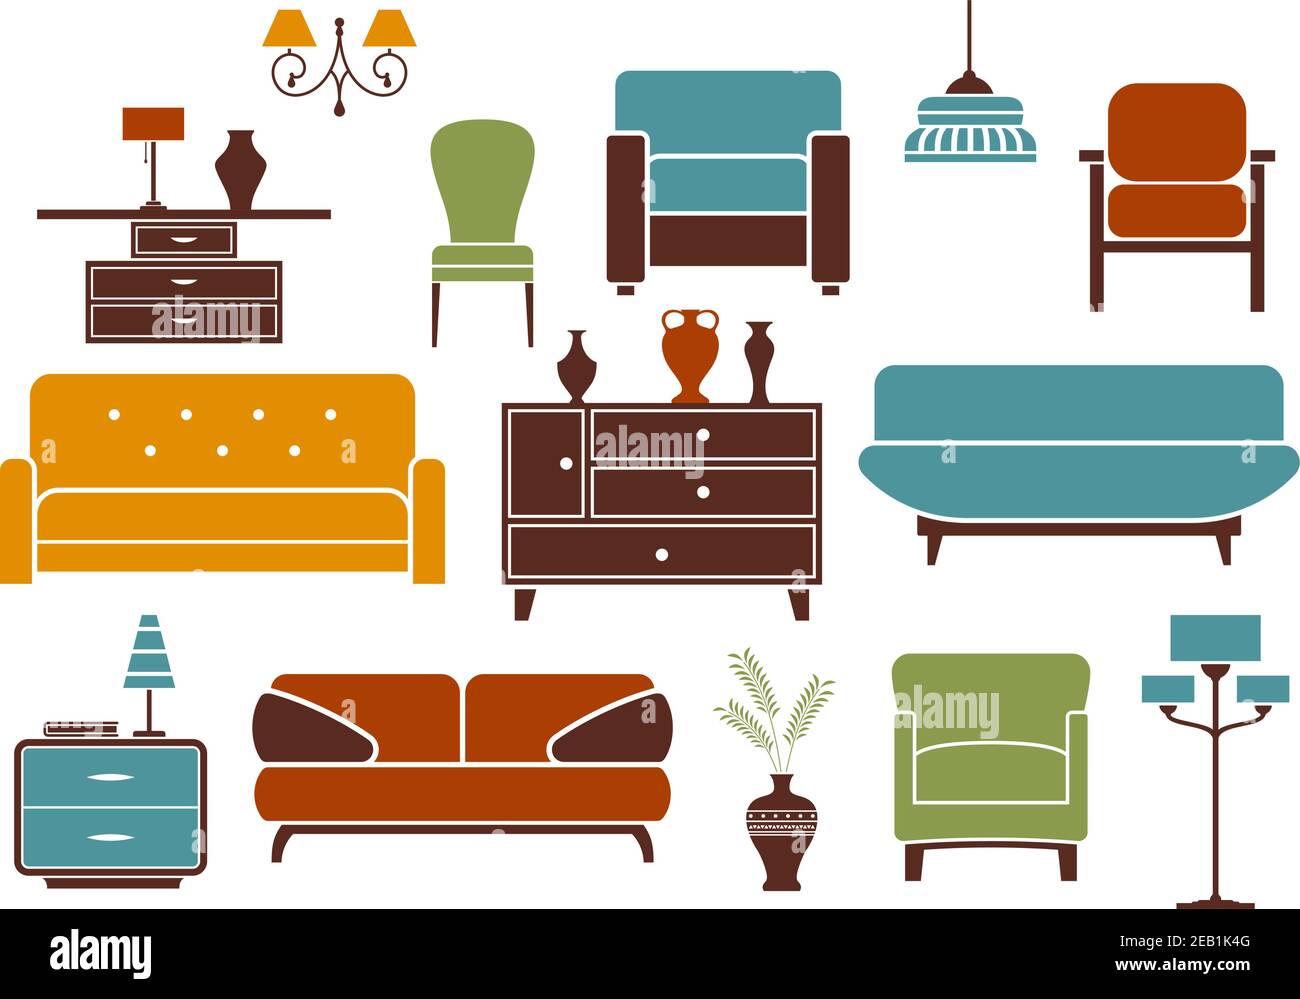 Mobilier et décoration intérieure : canapés modernes avec oreillers, fauteuils confortables, chaise vintage, armoire avec vases, table de nuit Illustration de Vecteur